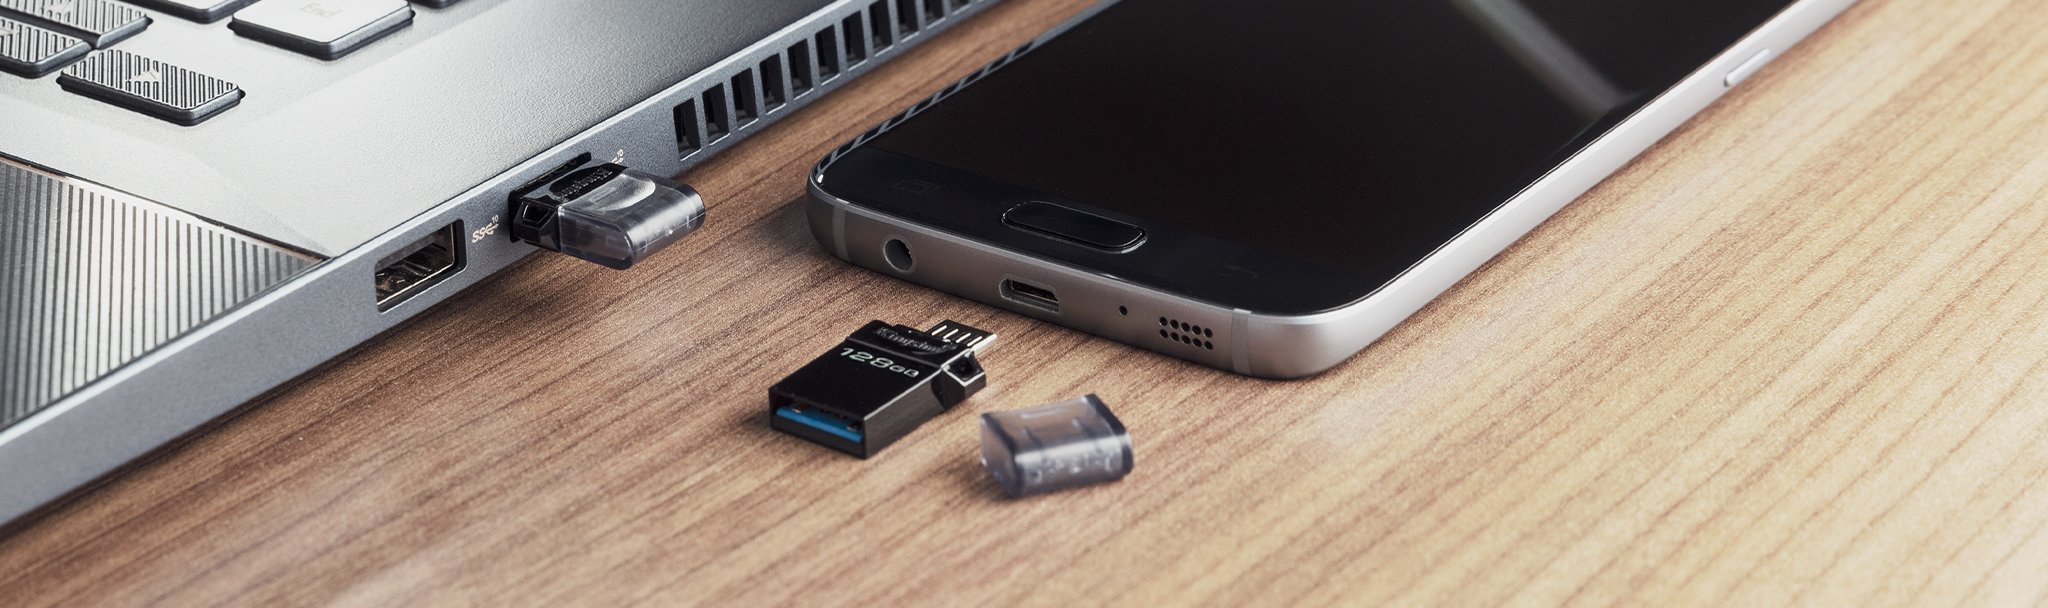 USB A형 및 microUSB 듀얼 인터페이스